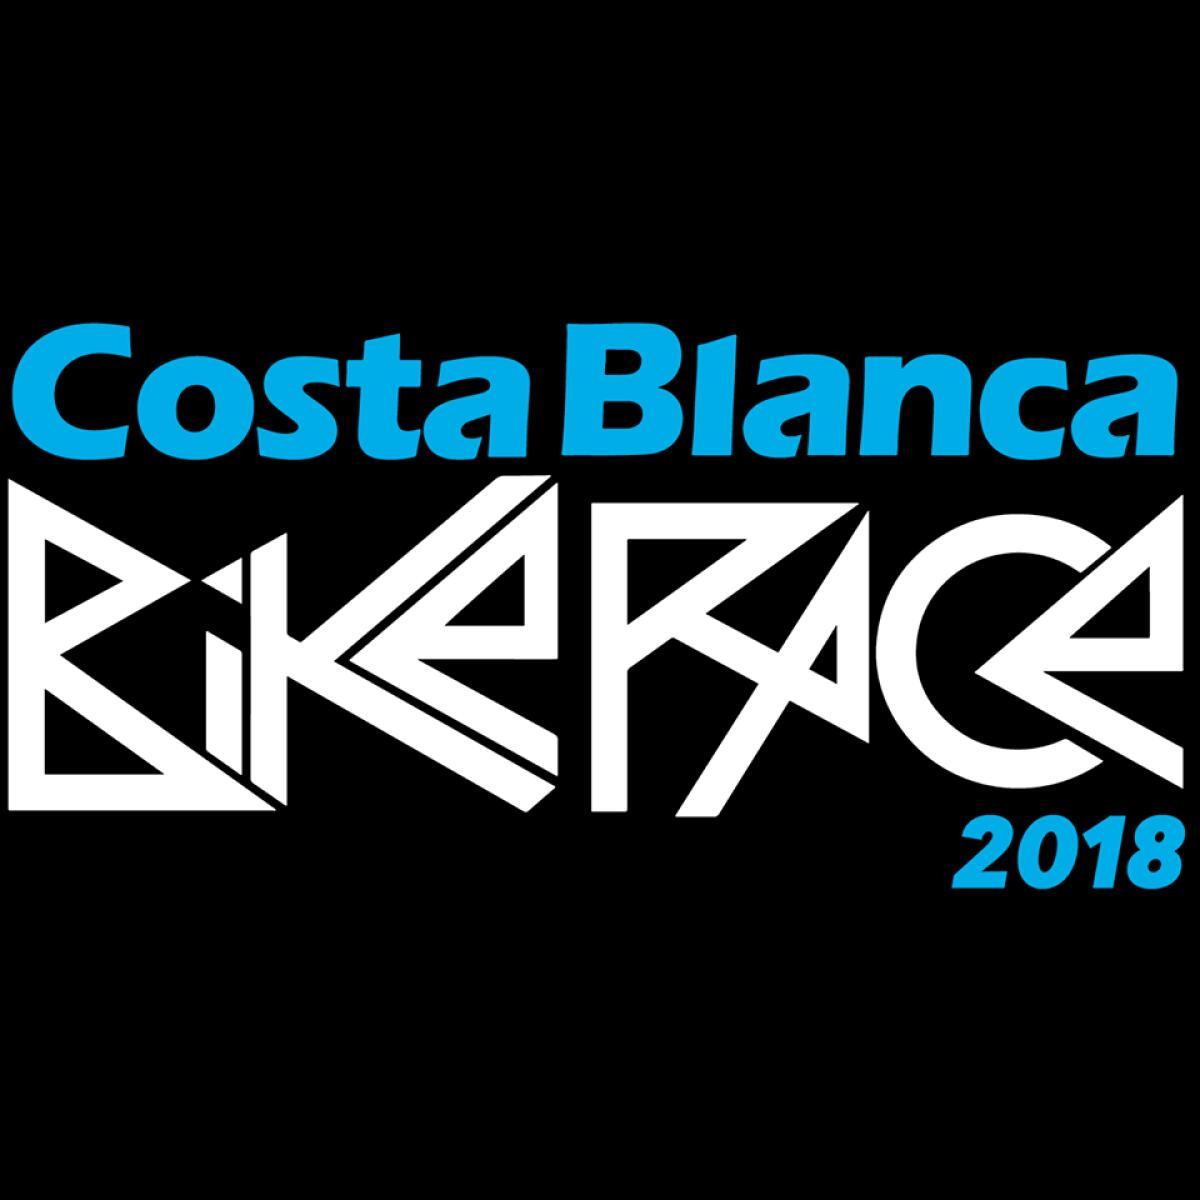 La Vila vuelve a promocionarse como final de etapa en una nueva edición de la ‘Costa Blanca Bike Race’ 